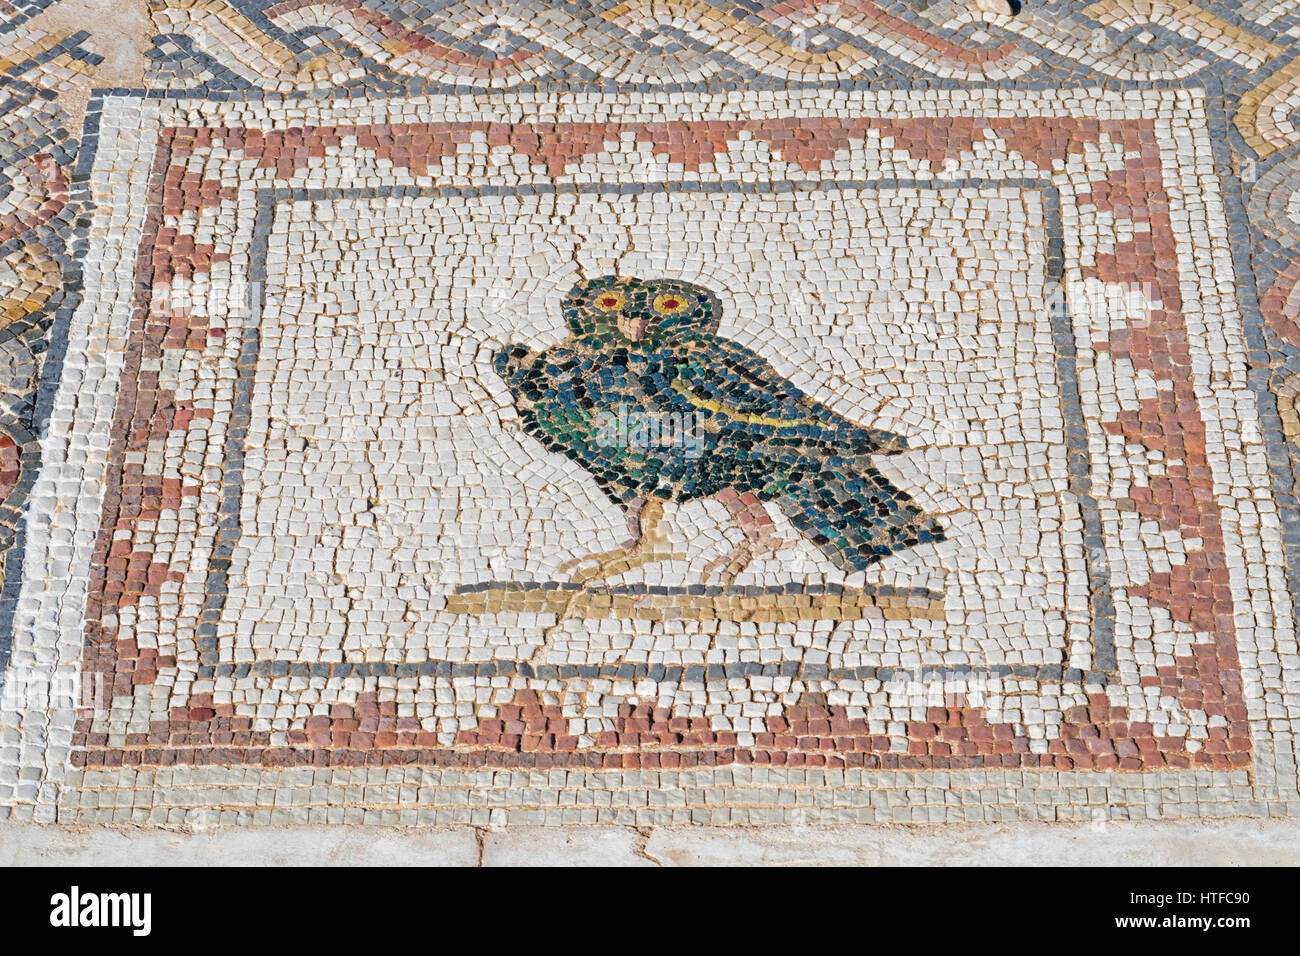 La città romana di Italica, vicino a Santiponce, provincia di Siviglia, in Andalusia Spagna meridionale. Mosaici in Casa de los Pajaros - La casa degli uccelli. Foto Stock